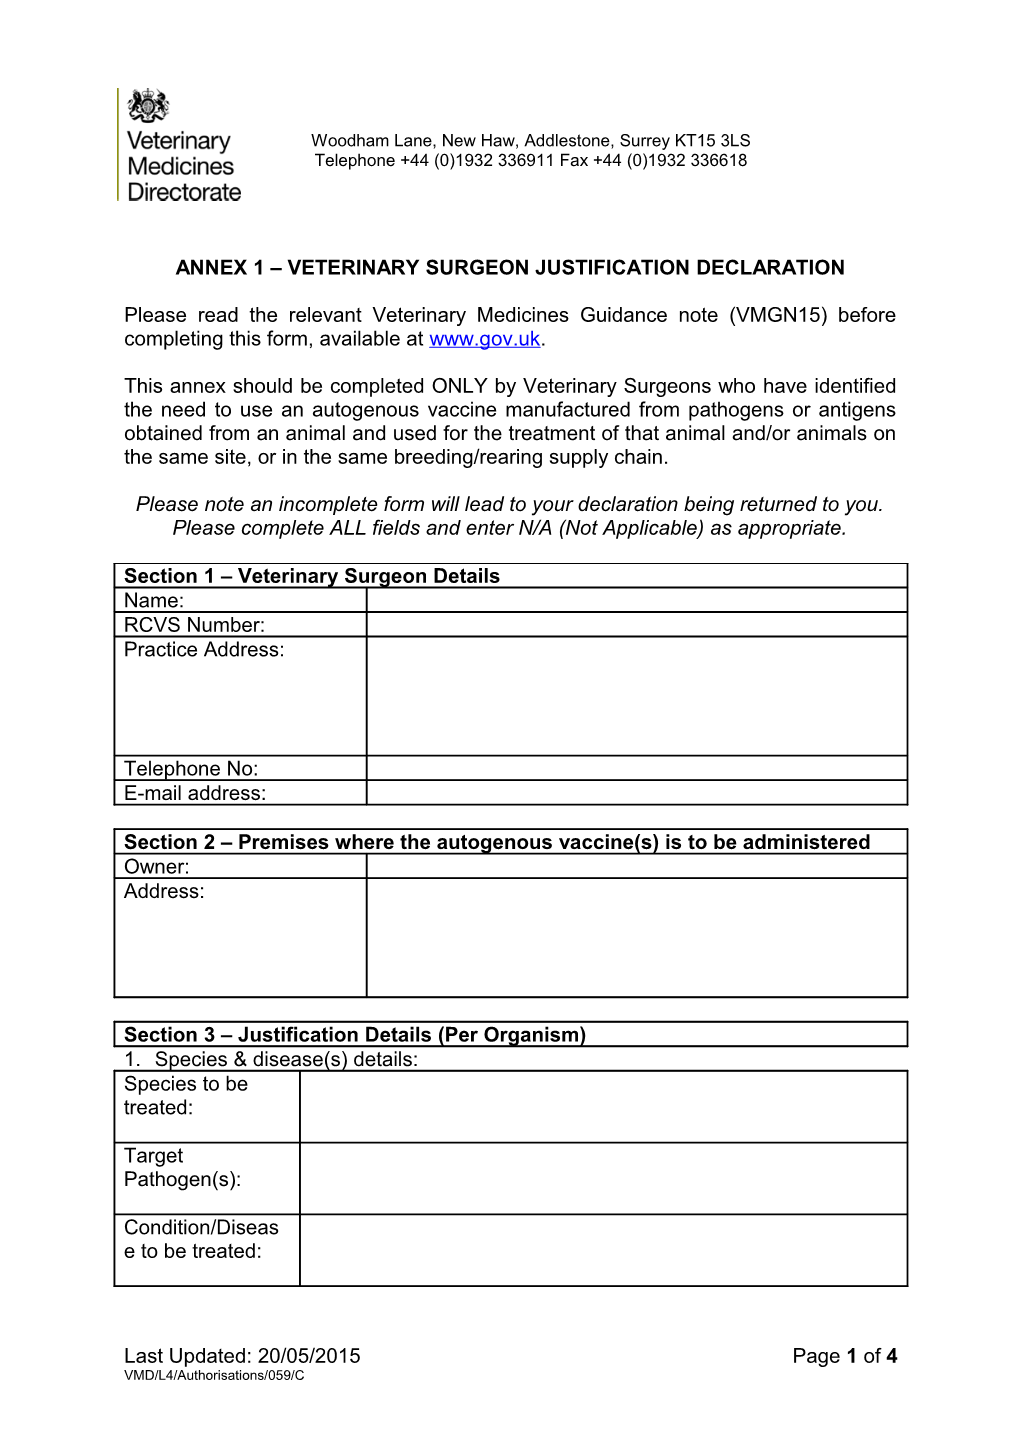 Annex 1 Veterinary Surgeon Justification Declaration